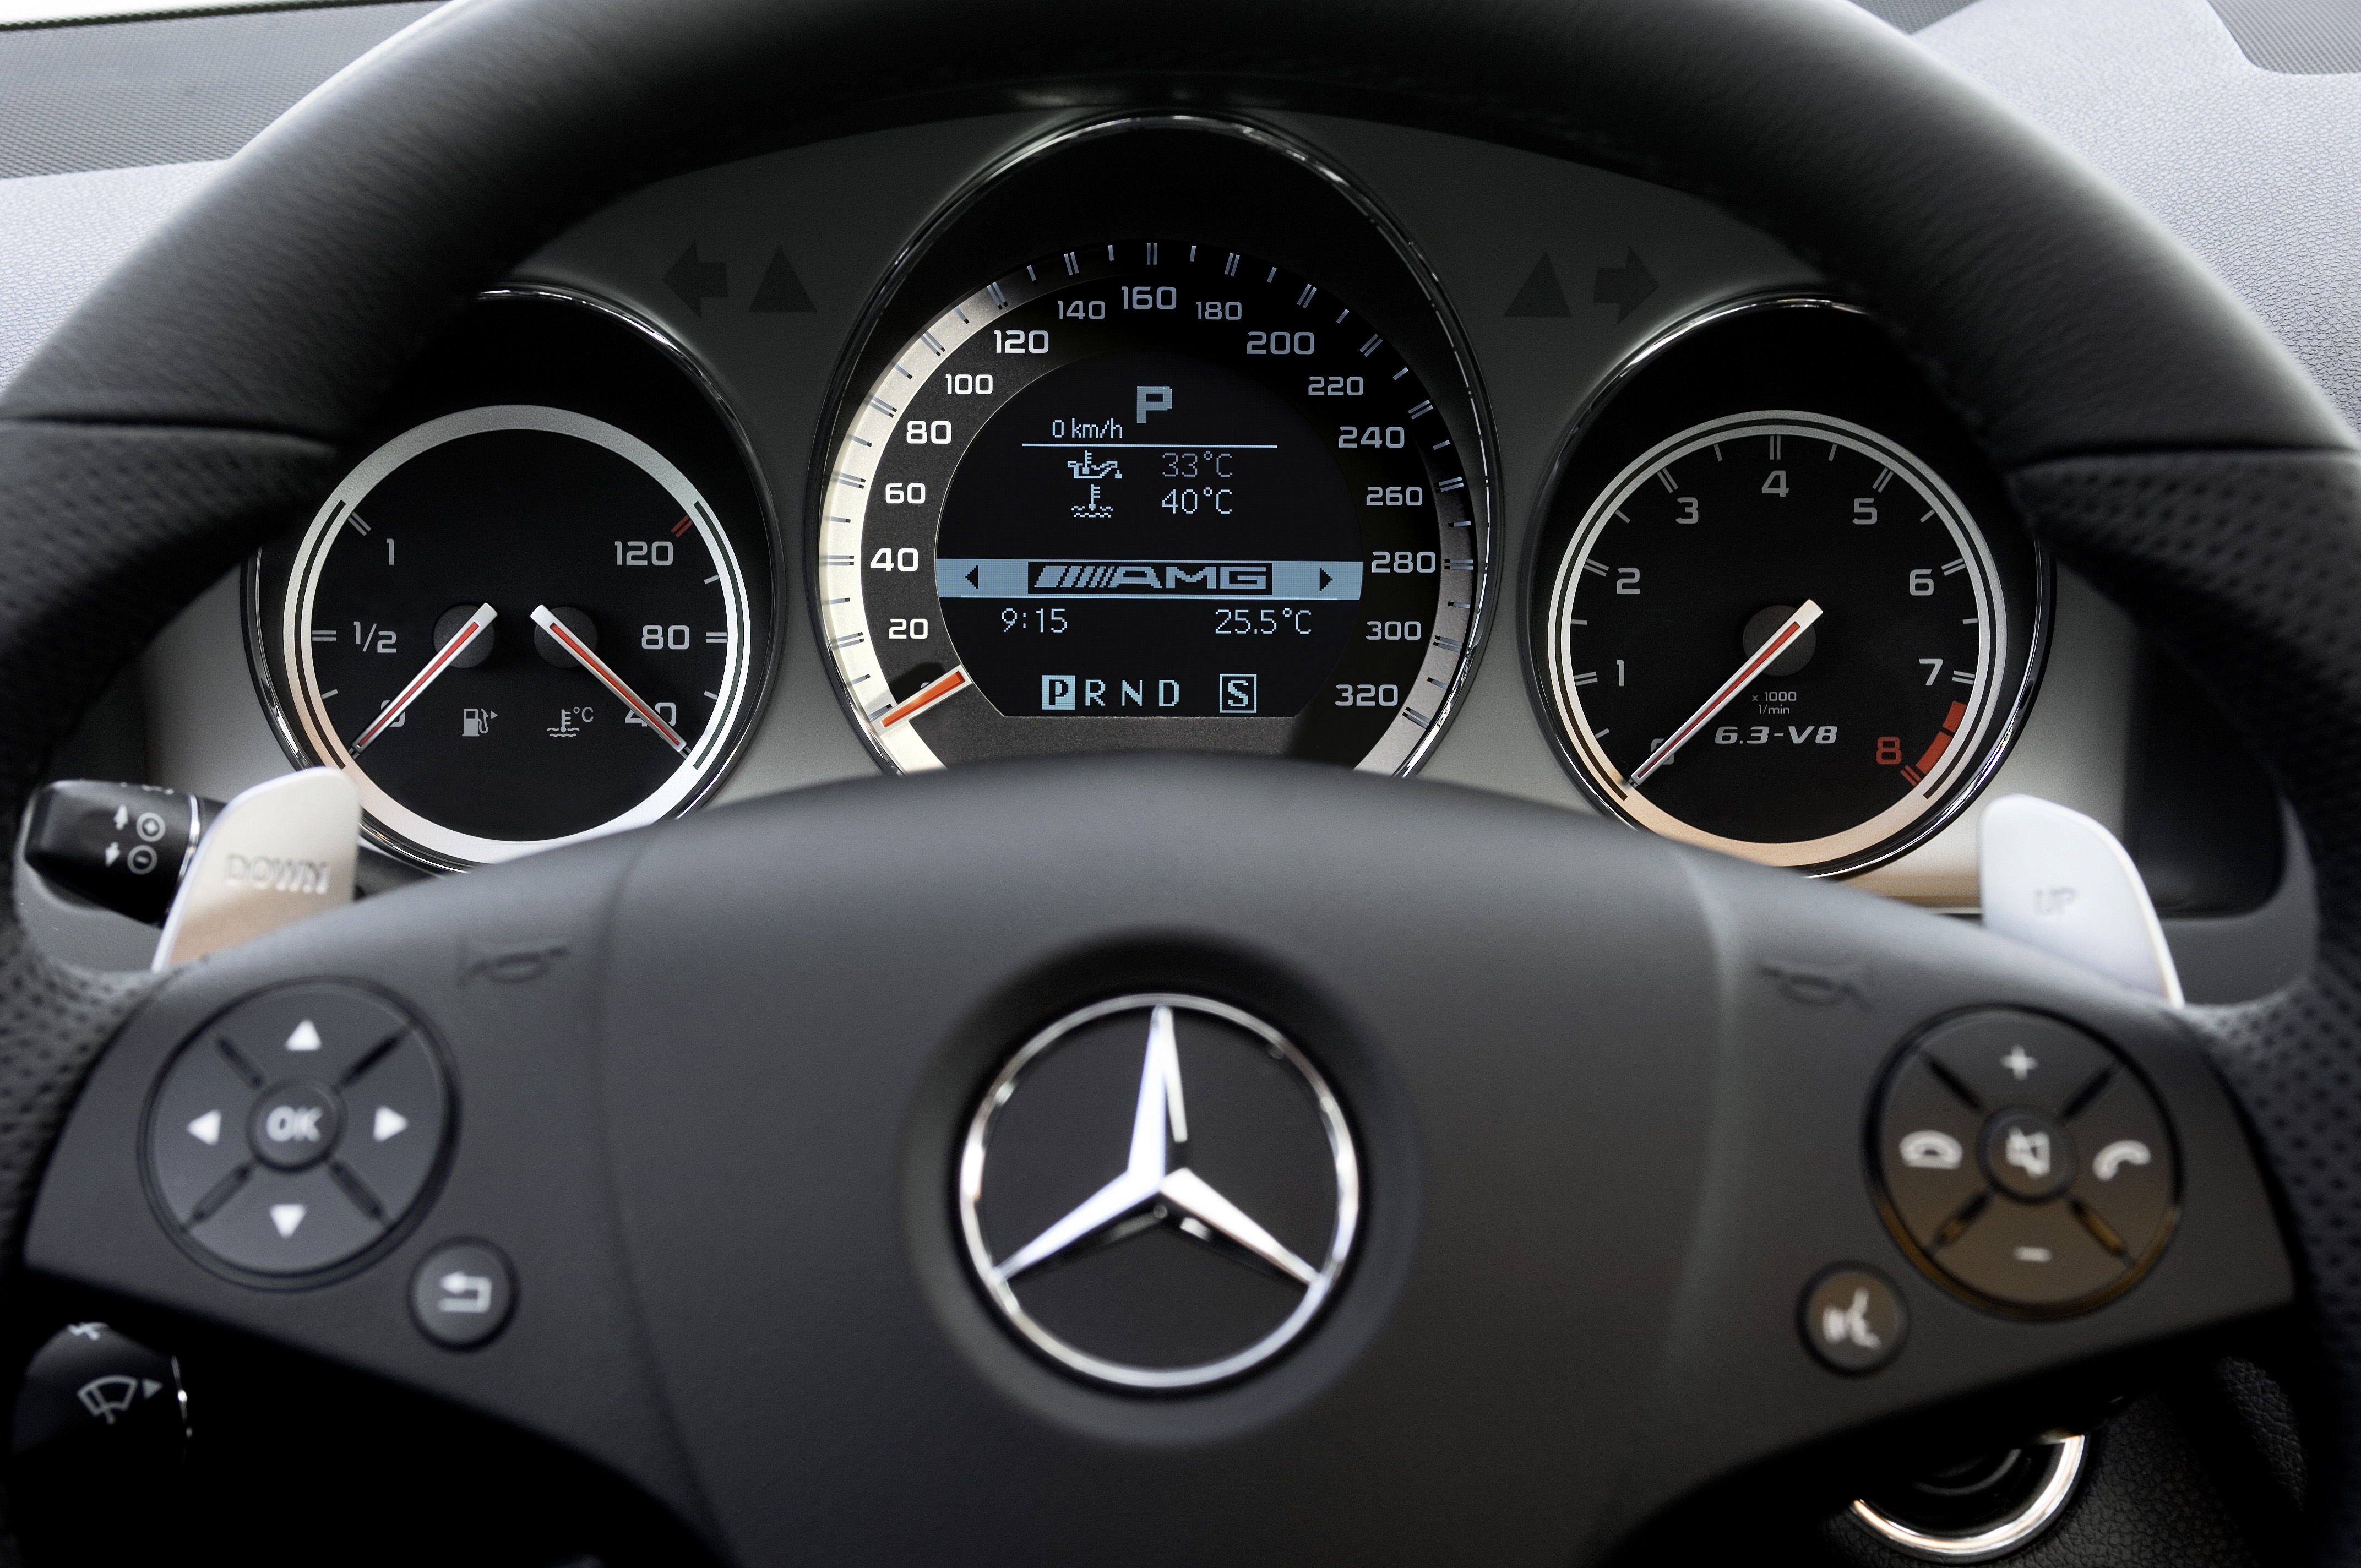 Скорость на новом автомобиле. Mercedes Benz c63 AMG спидометр. Mercedes-Benz w204. Приборная панель Mercedes w204. Спидометр Мерседес Бенц с класс w204.